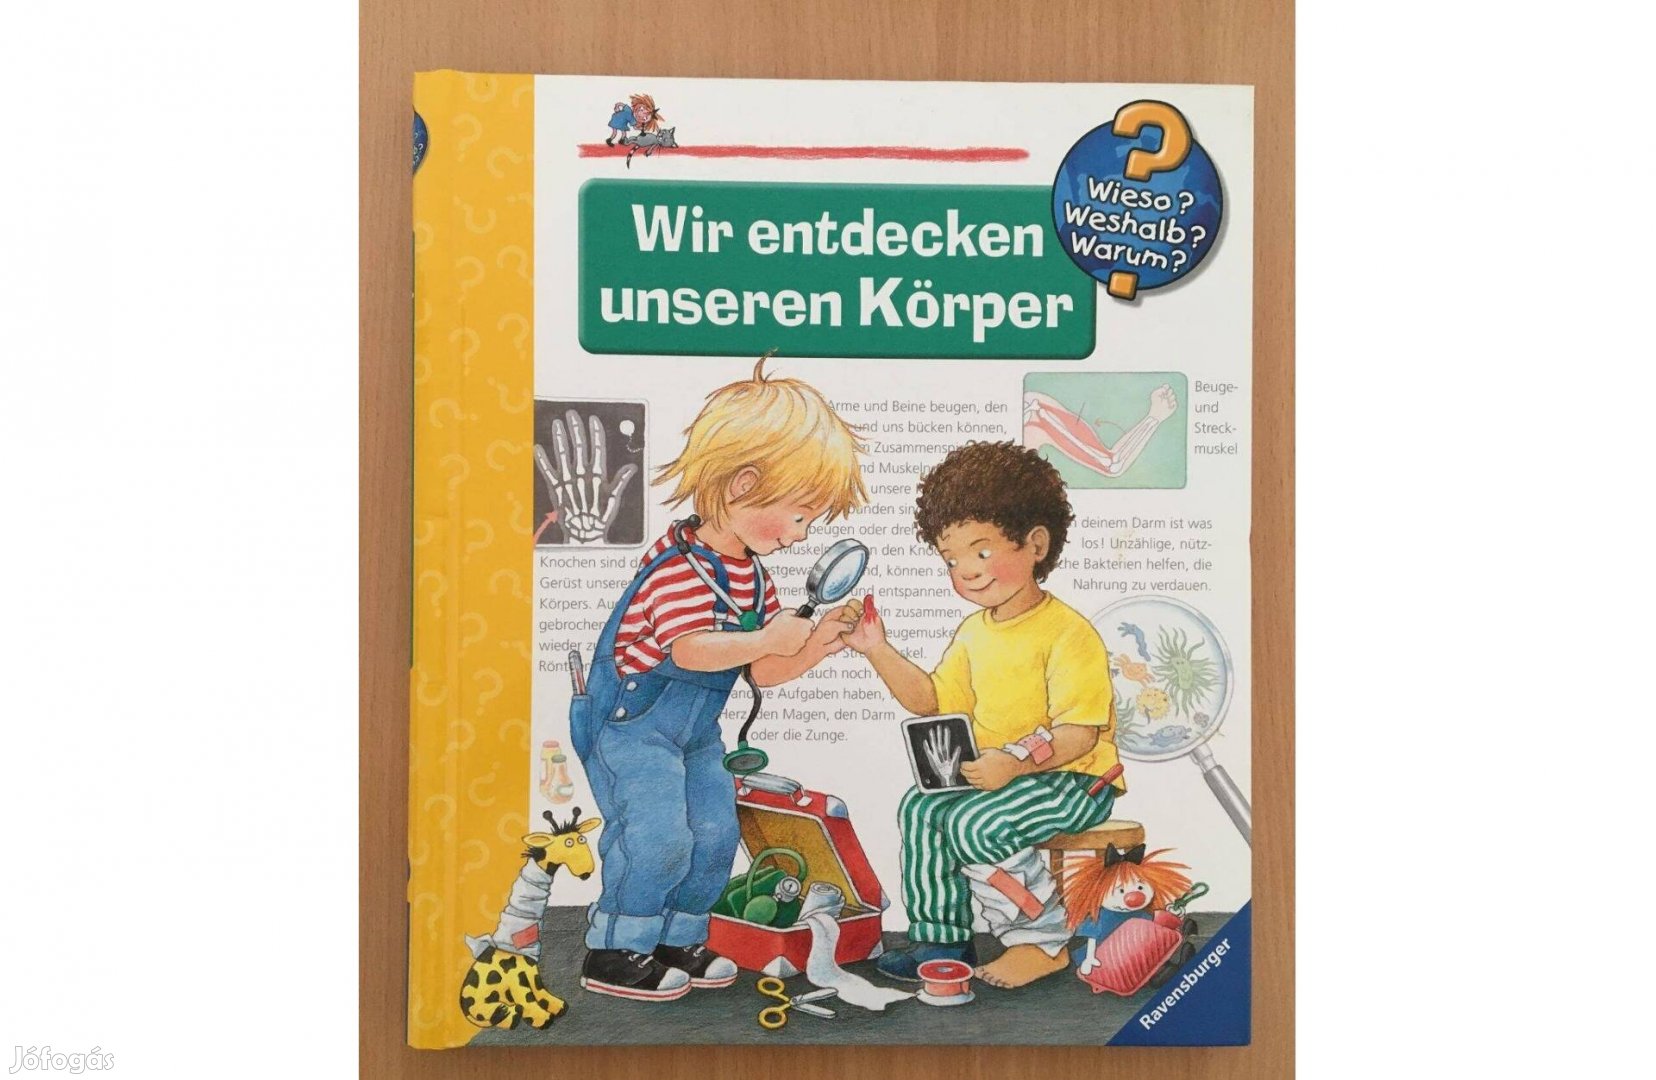 Wir entdecken unseren Körper című, német nyelvű könyv